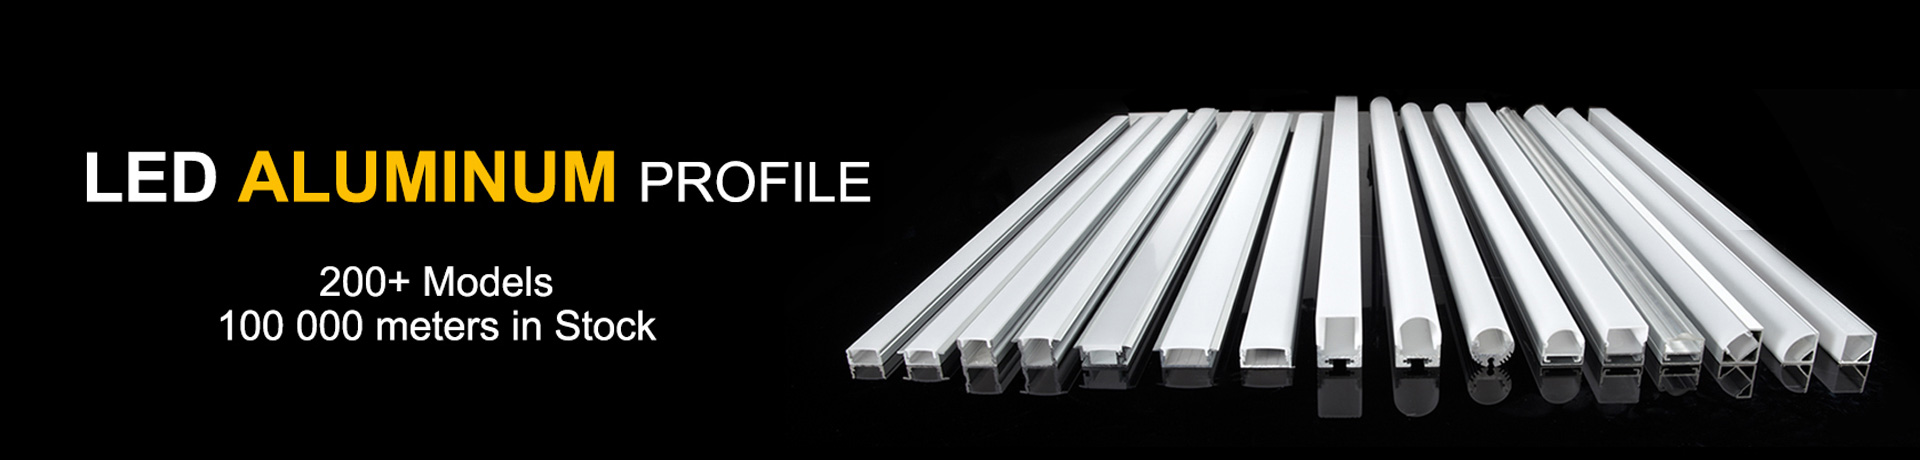 Perfil de aluminio led - Canal de aluminio - Perfil de aluminio para tiras de luz LED